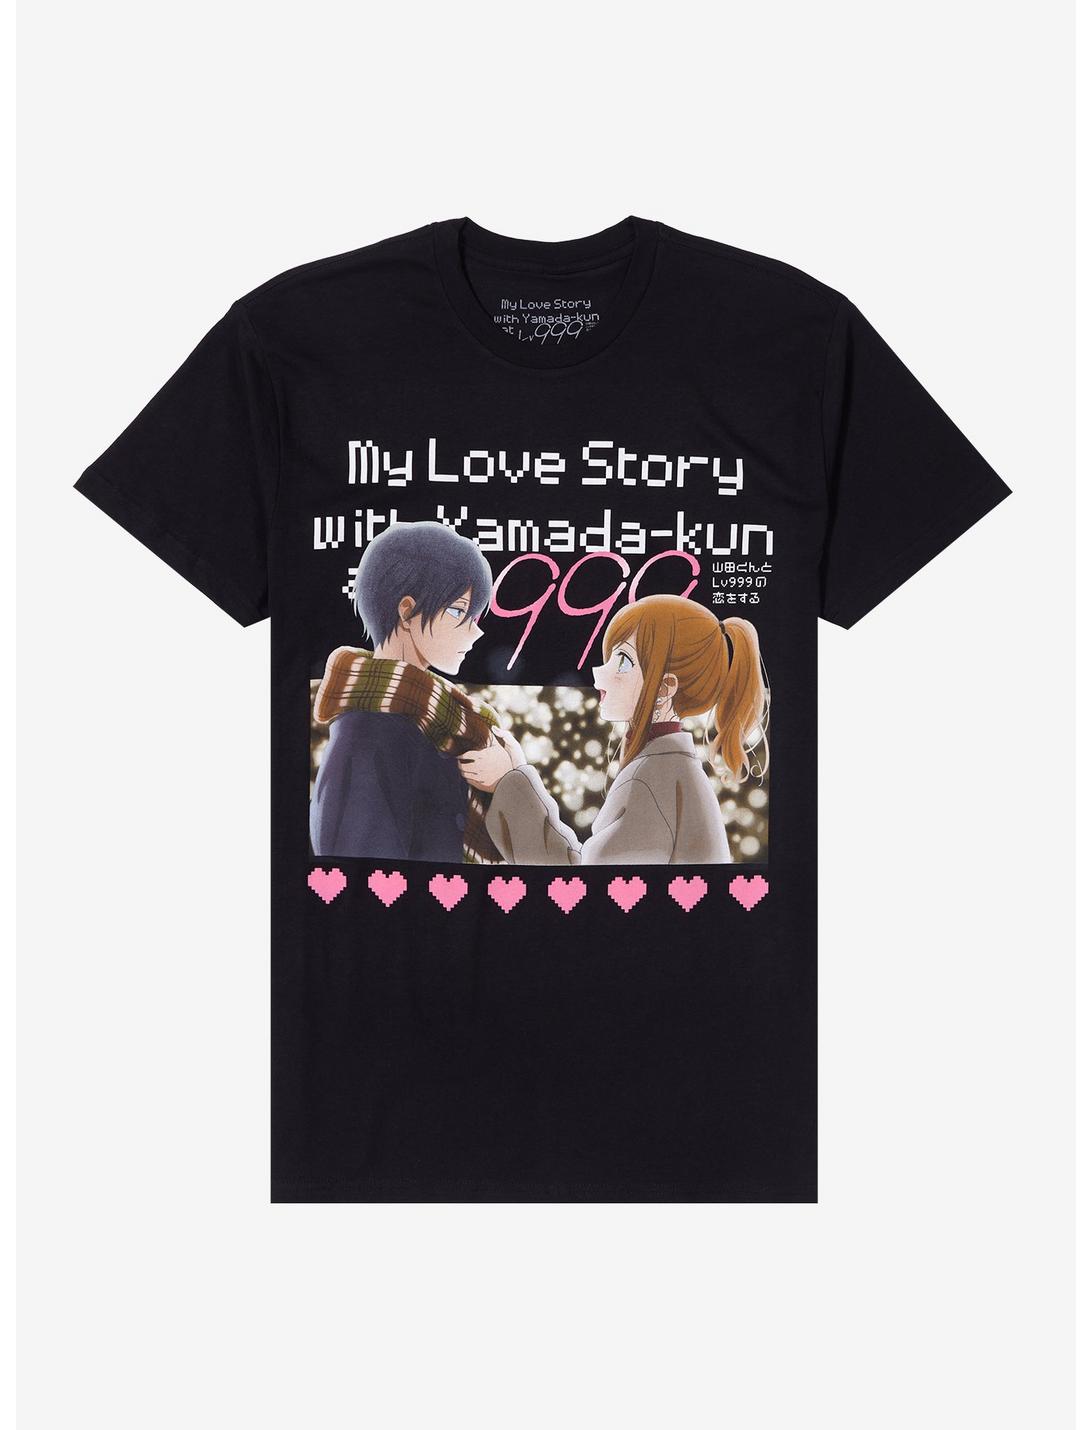 My Love Story With Yamada-Kun At Lv999 Hearts T-Shirt, BLACK, hi-res